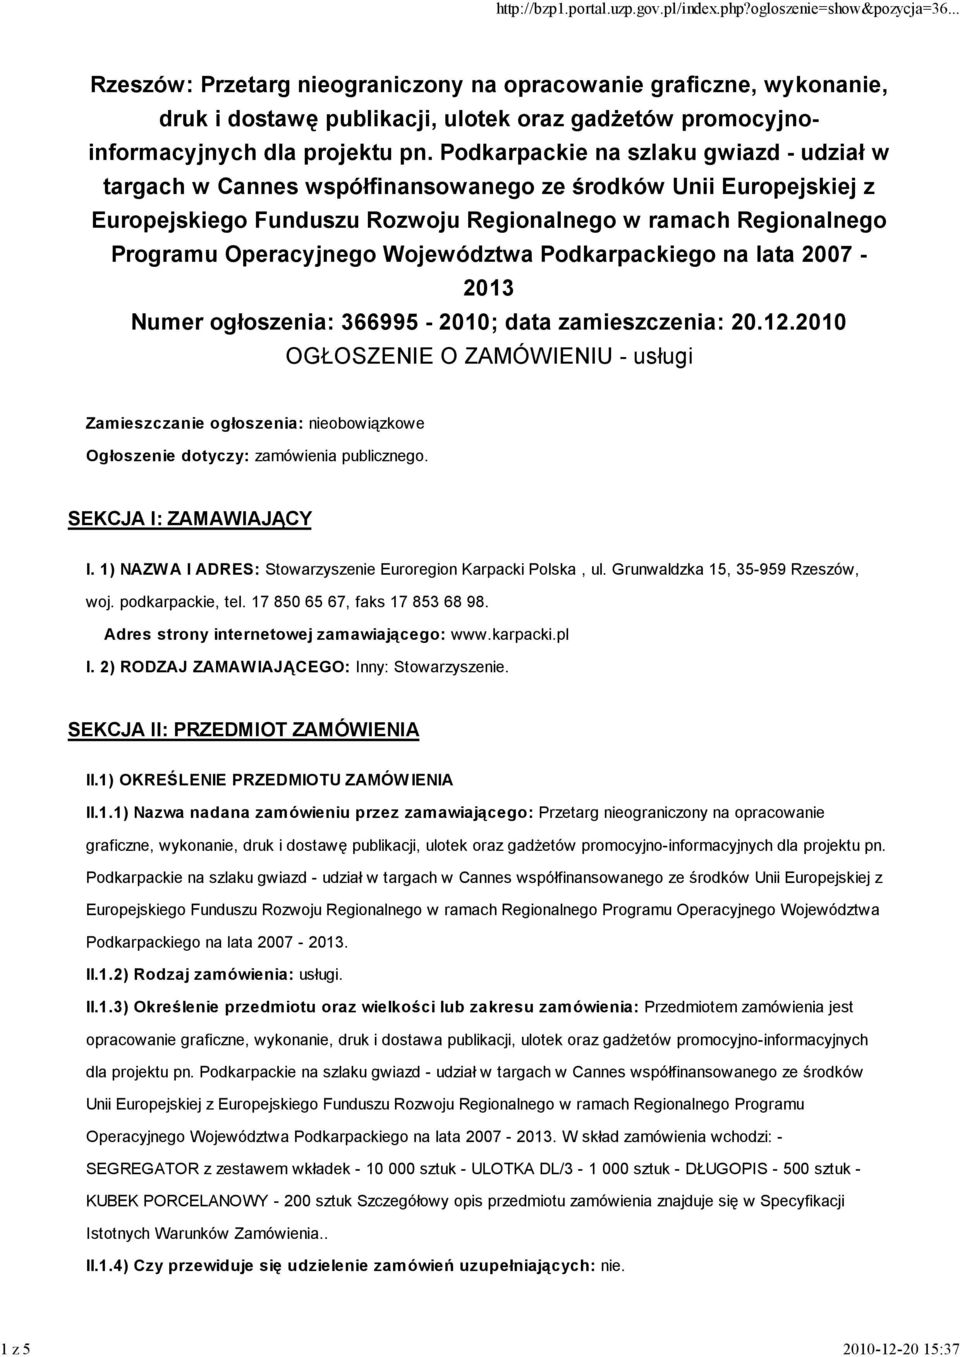 Województwa Podkarpackiego na lata 2007-2013 Numer ogłoszenia: 366995-2010; data zamieszczenia: 20.12.